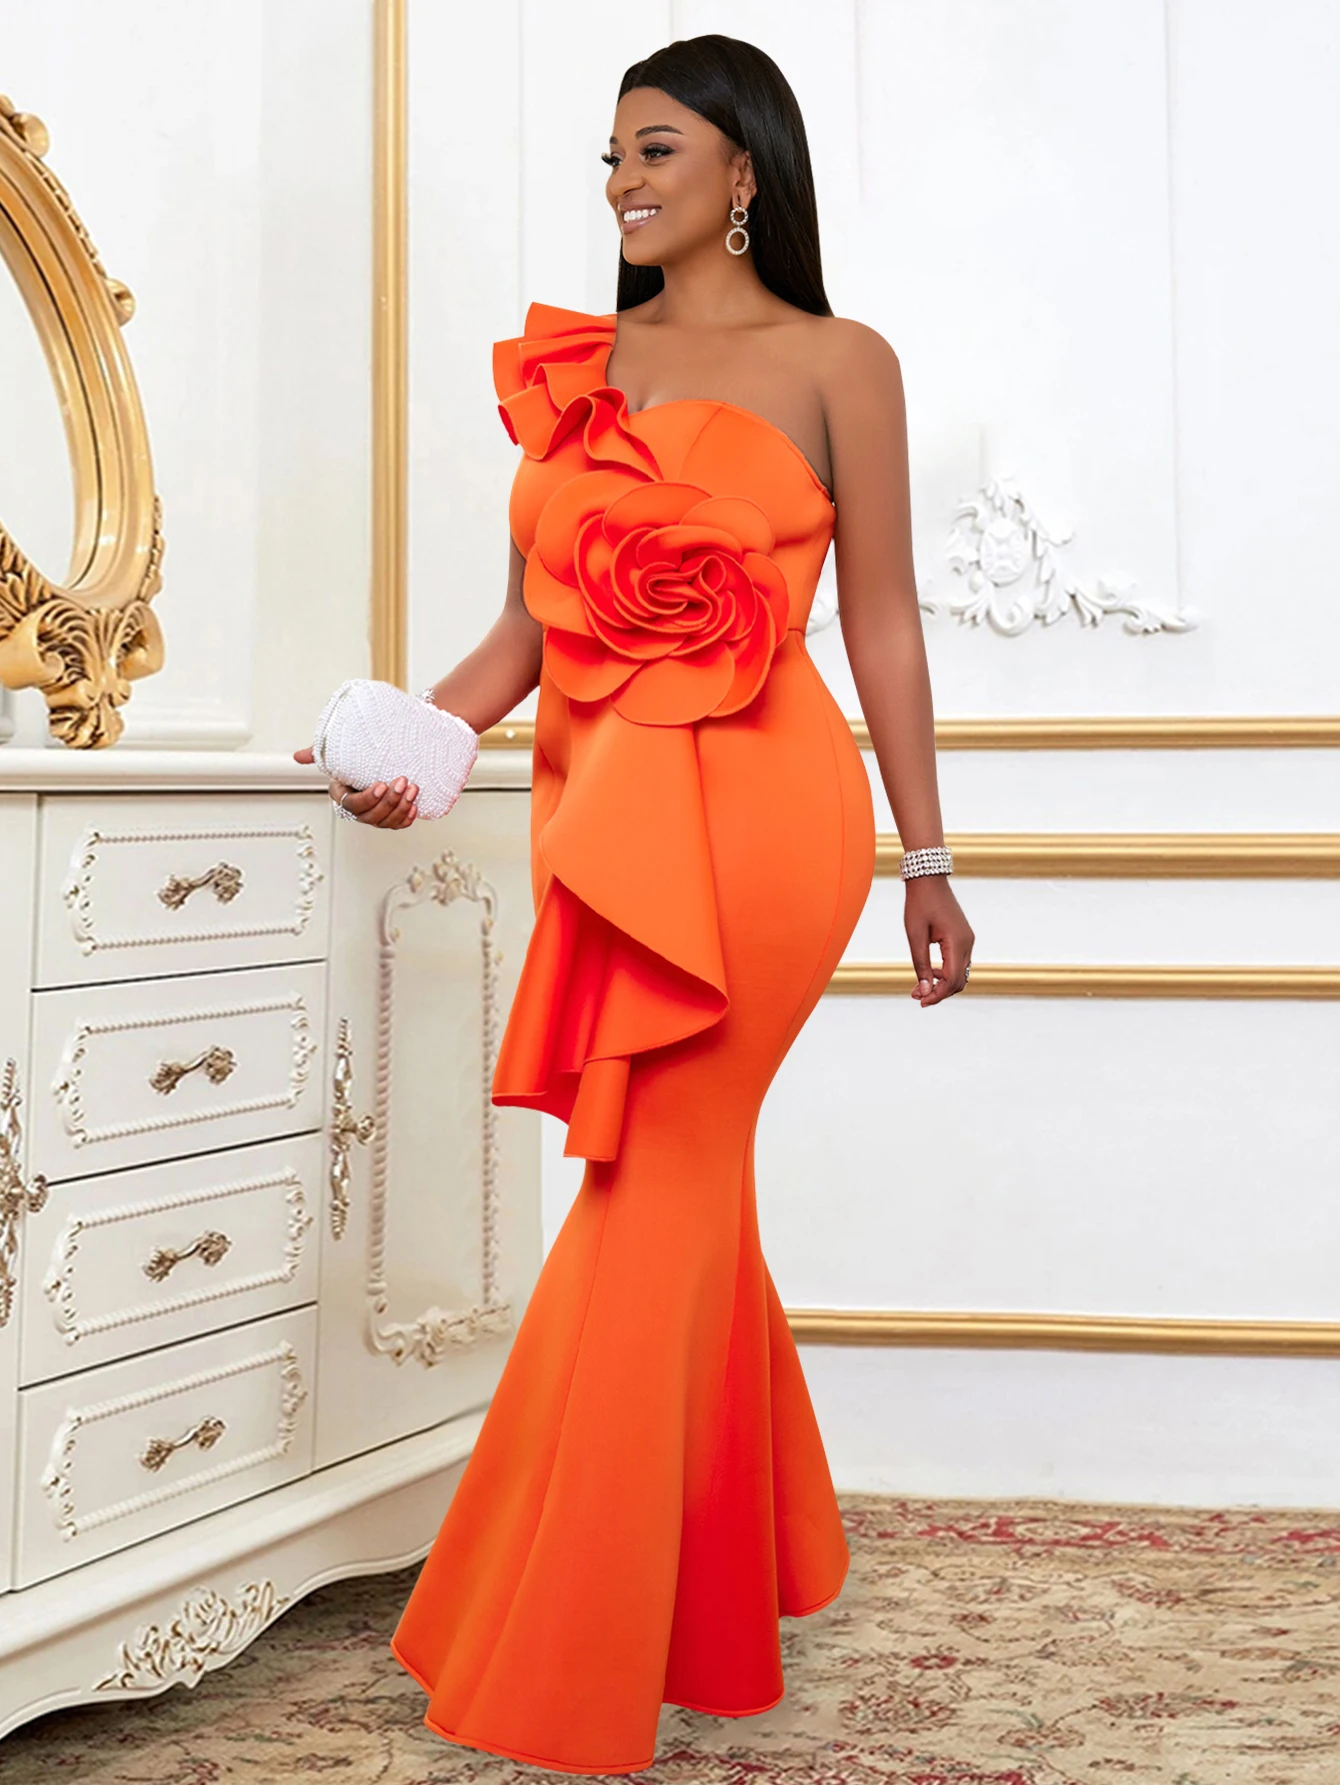 Оранжевые Вечерние Платья для Женщин с Оборками на одно плечо и Цветочным Принтом в стиле Ампир, Облегающие Макси, Коктейльные Платья для Мероприятий, Наряды Большого Размера 4XL